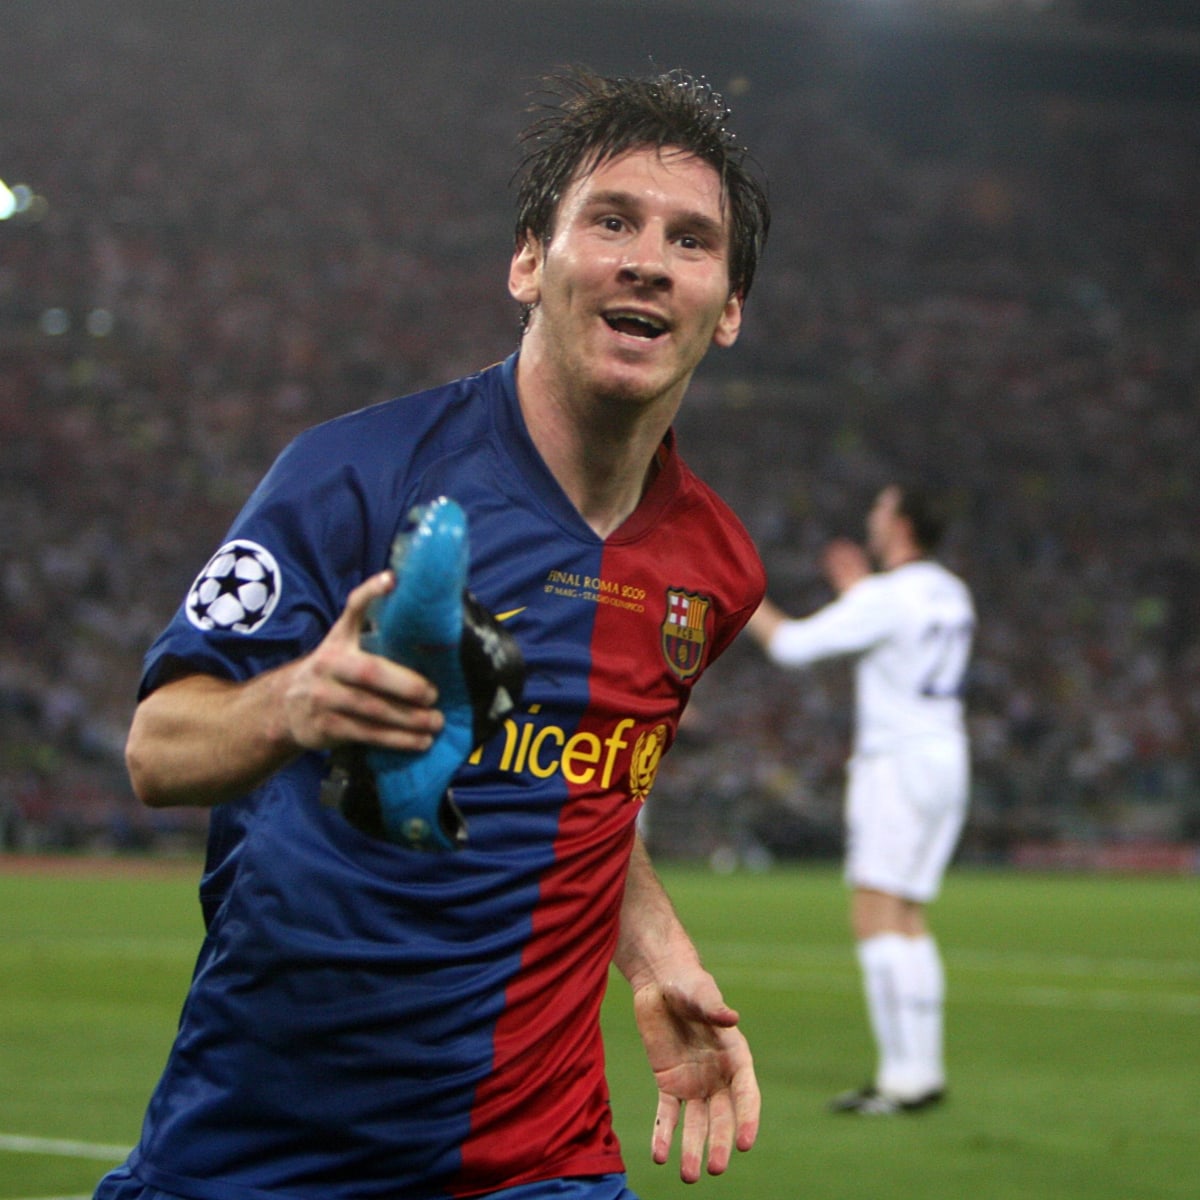 Lionel Messi vs Cristiano Ronaldo head-to-head: Messi up 16-11